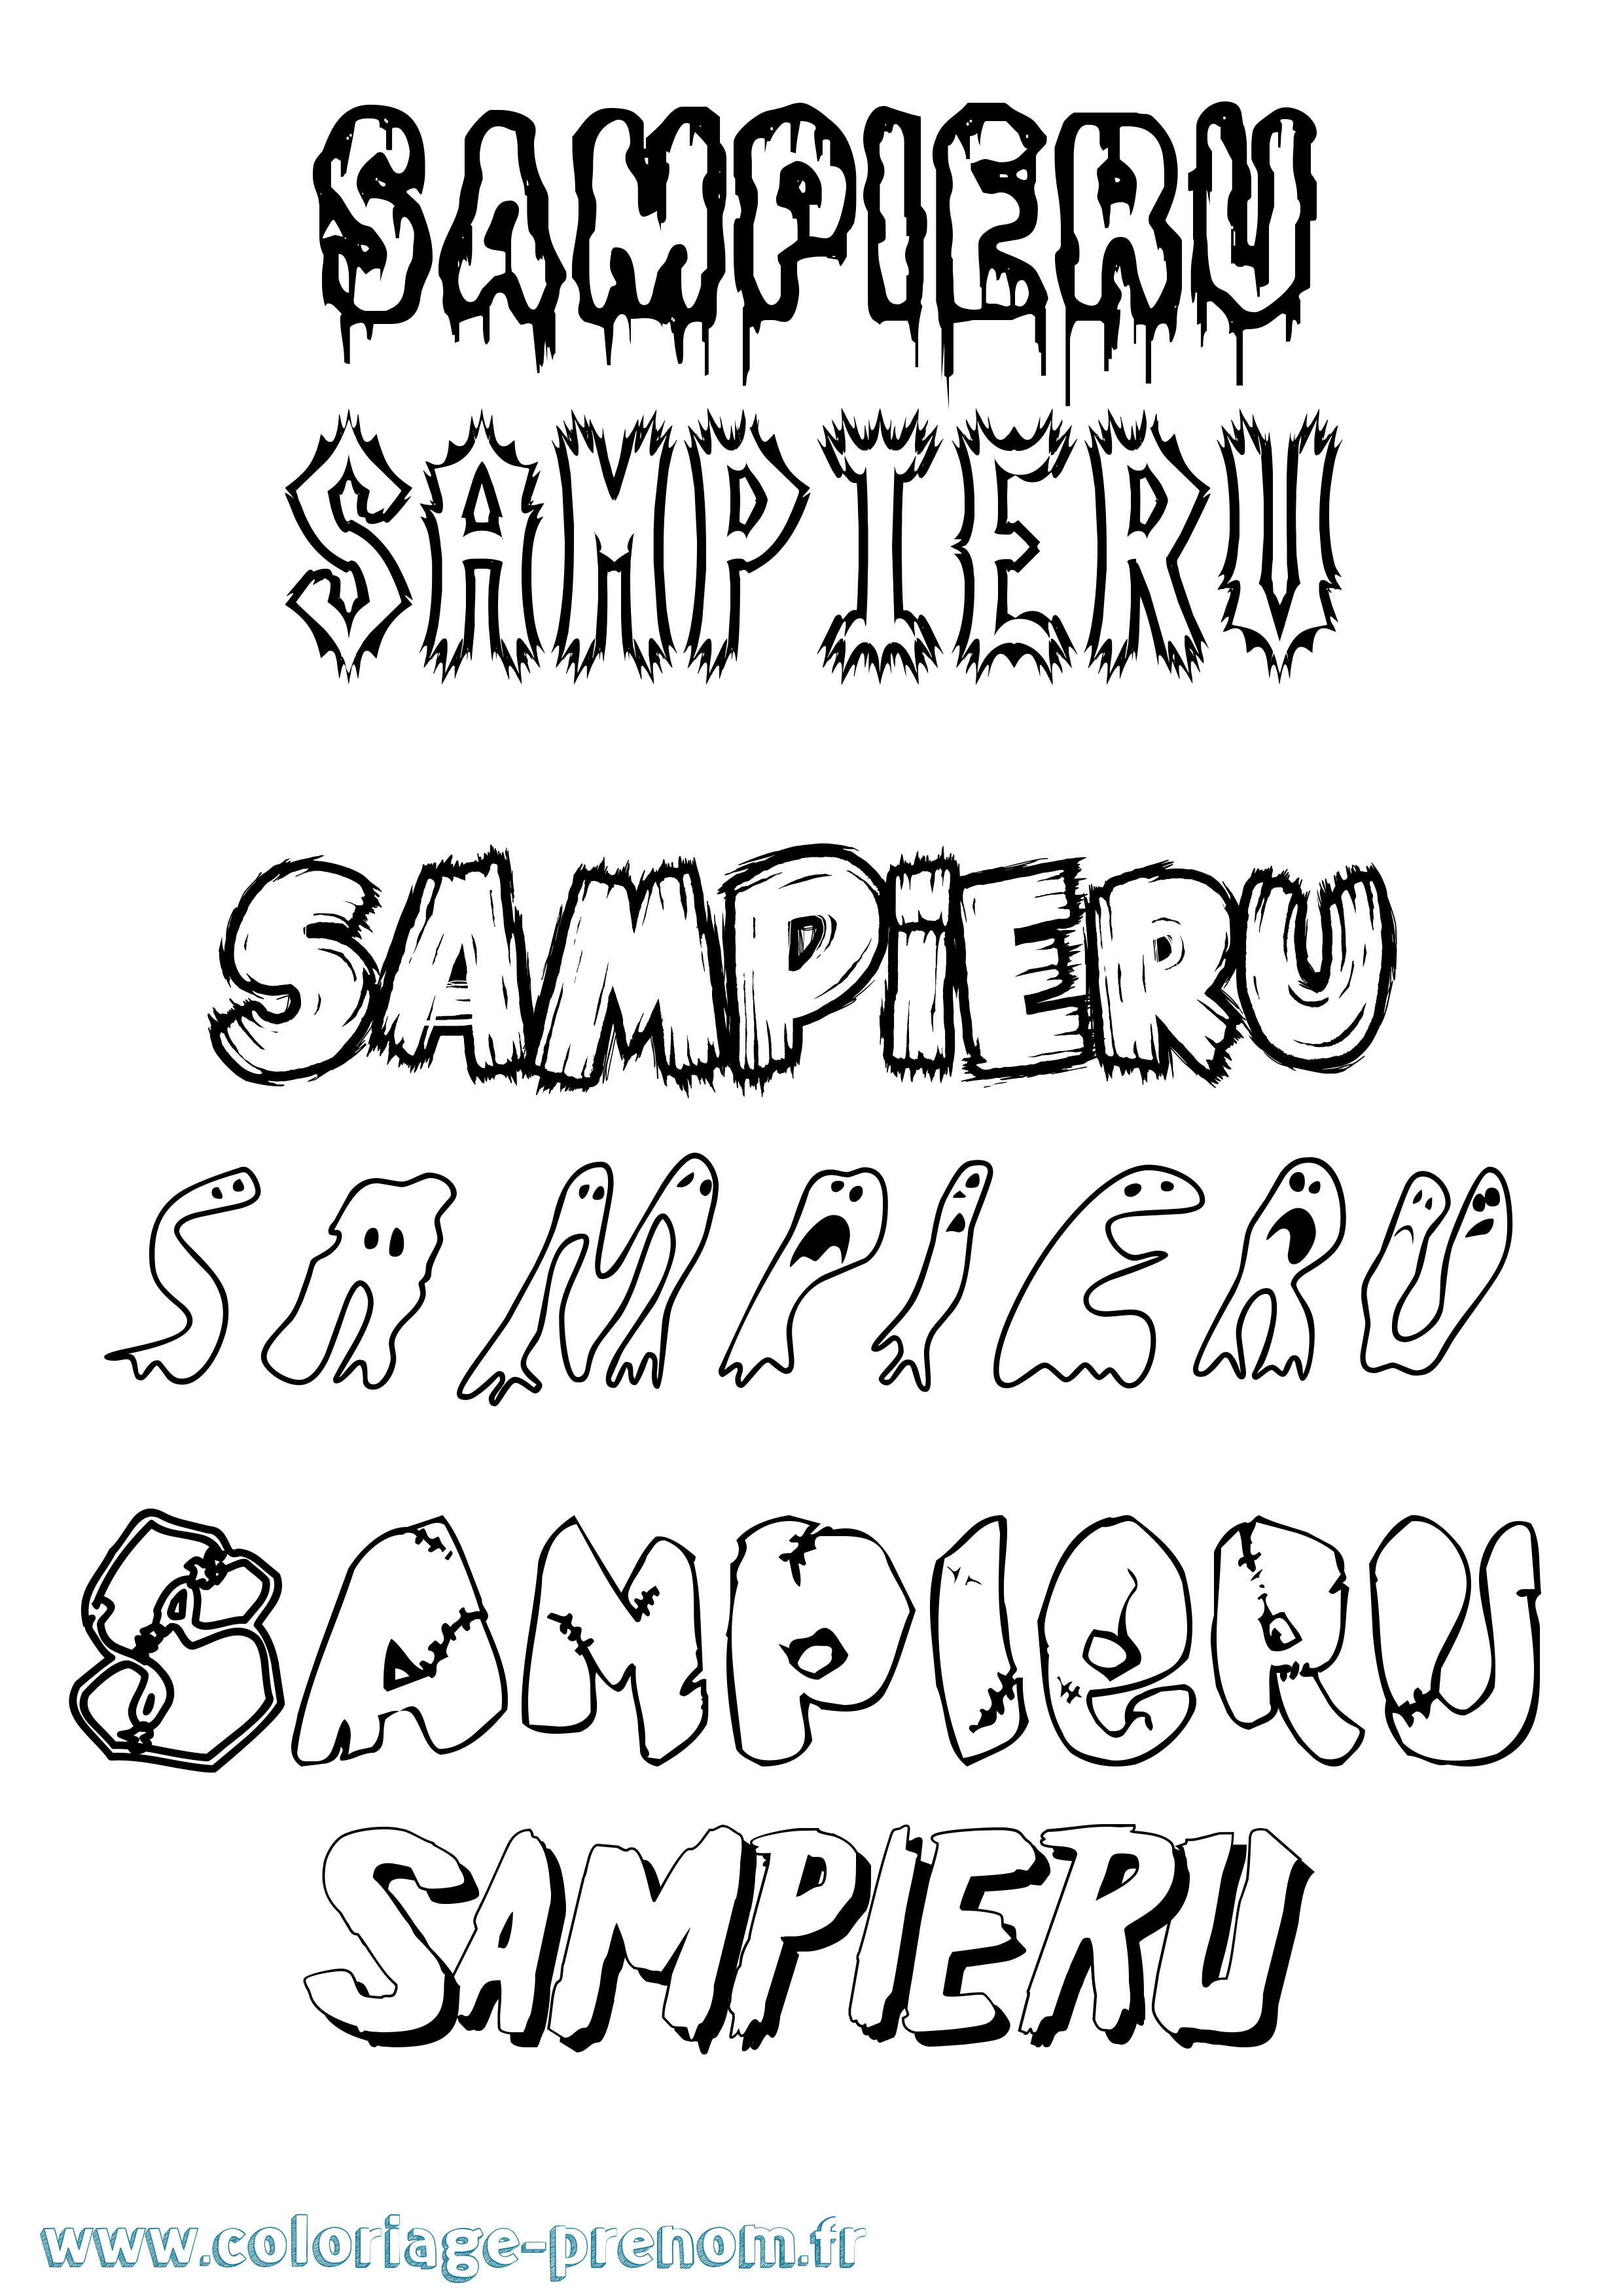 Coloriage prénom Sampieru Frisson